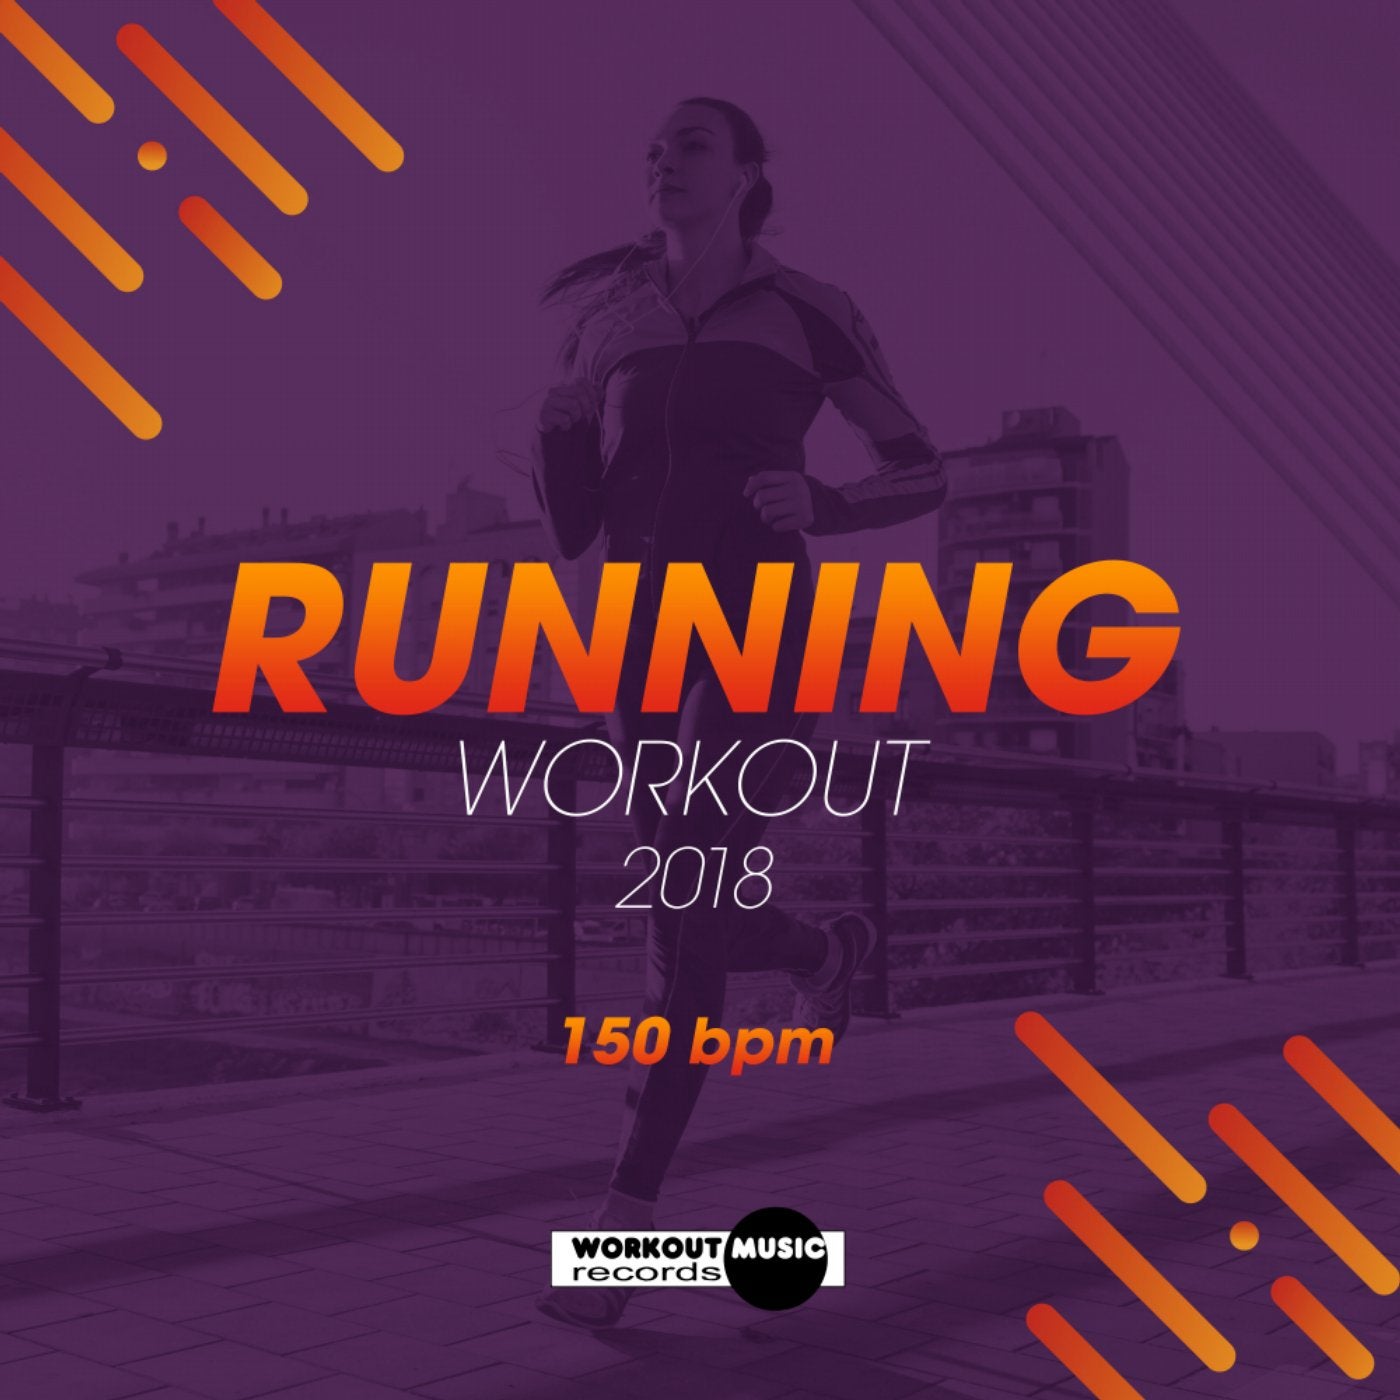 Running Workout 2018: 150 bpm